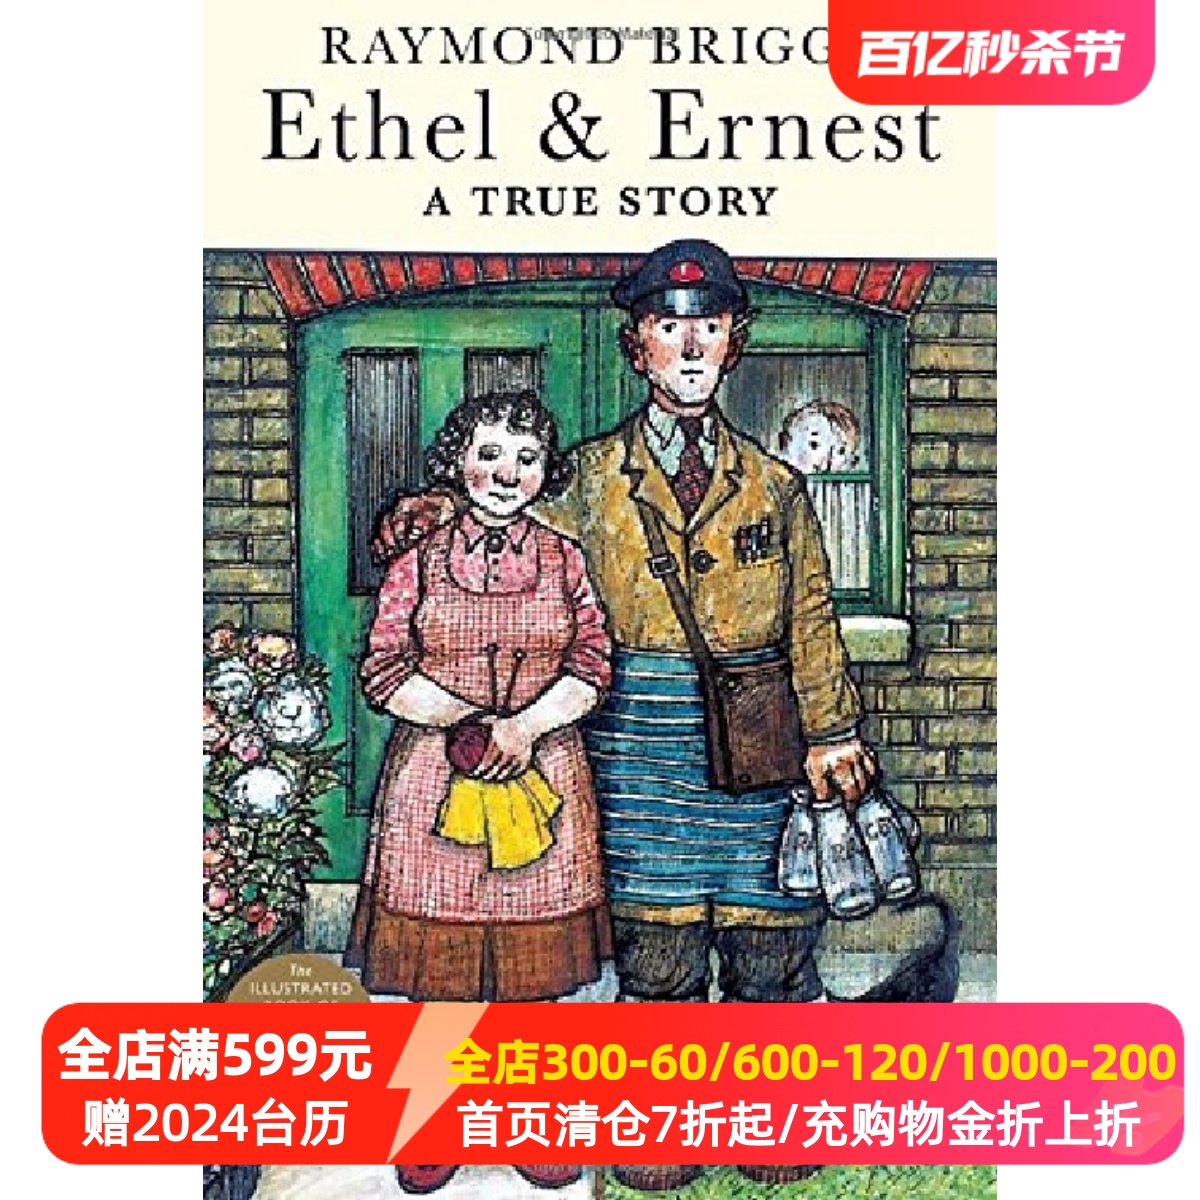 英文原版 Raymond Briggs: Ethel & Ernest 伦敦一家人 《雪人》作者雷蒙·布力格的温馨漫画